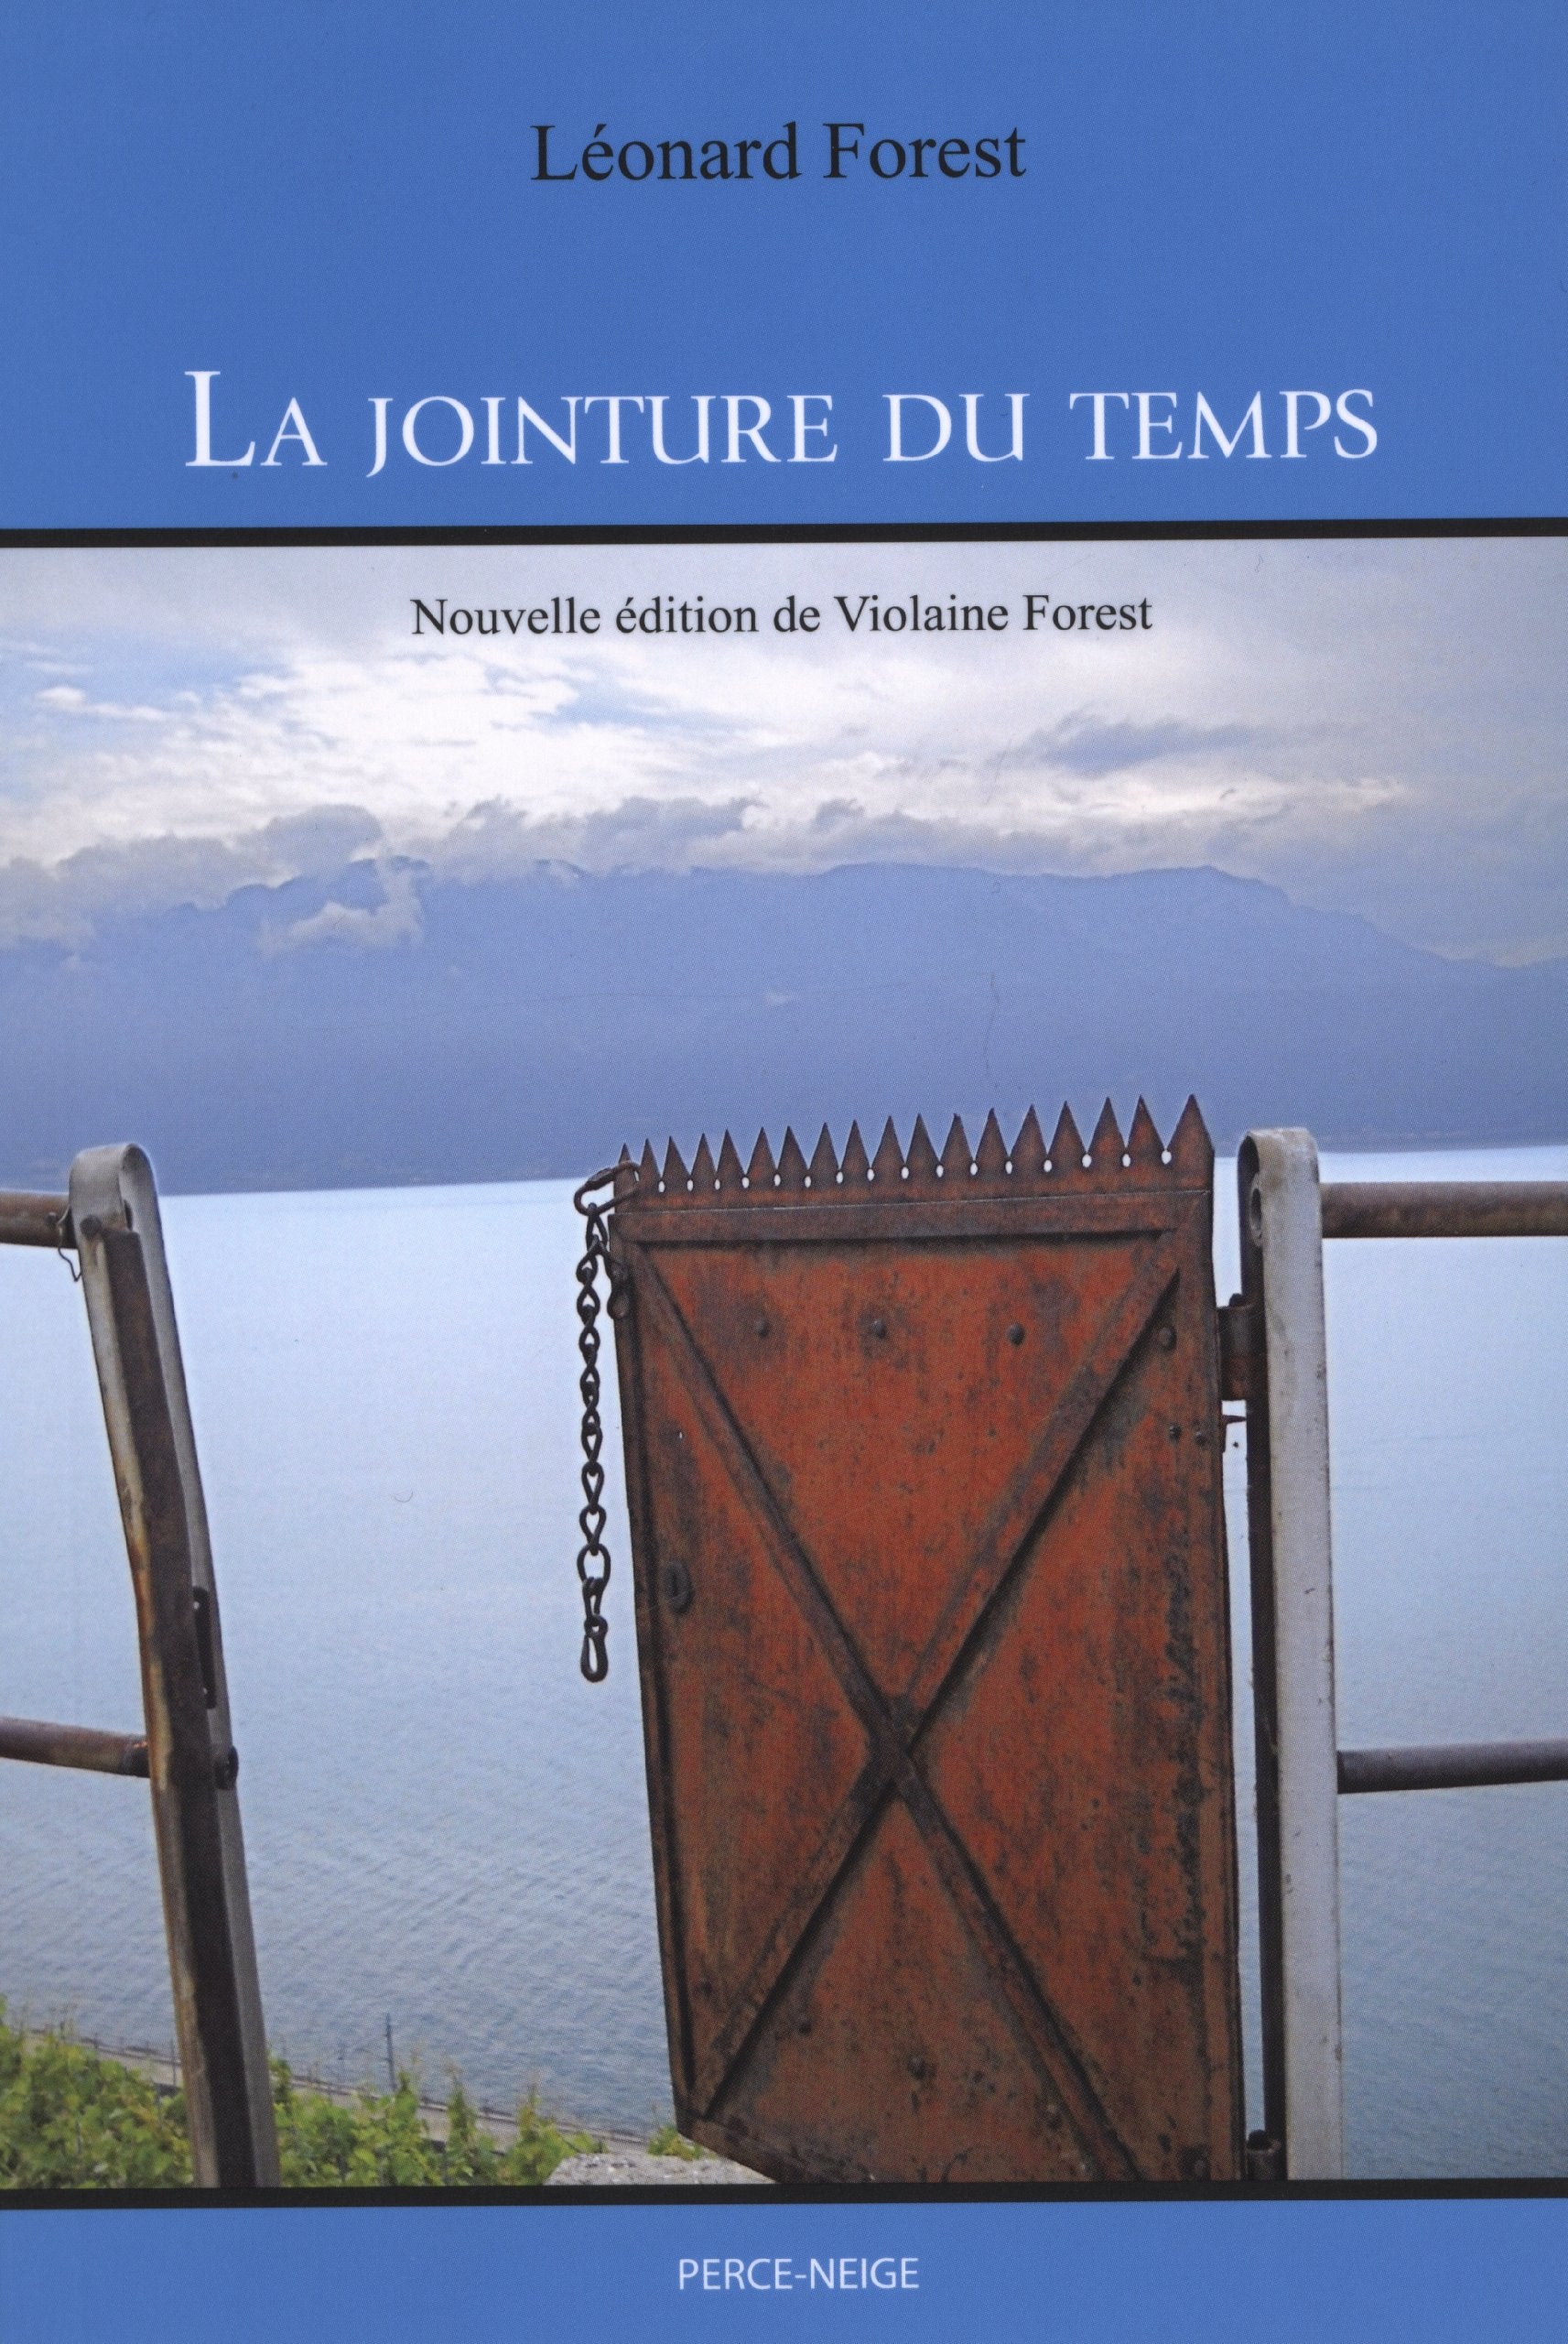 Livre ISBN 2920221612 La jointure du temps (Léonard Forest)